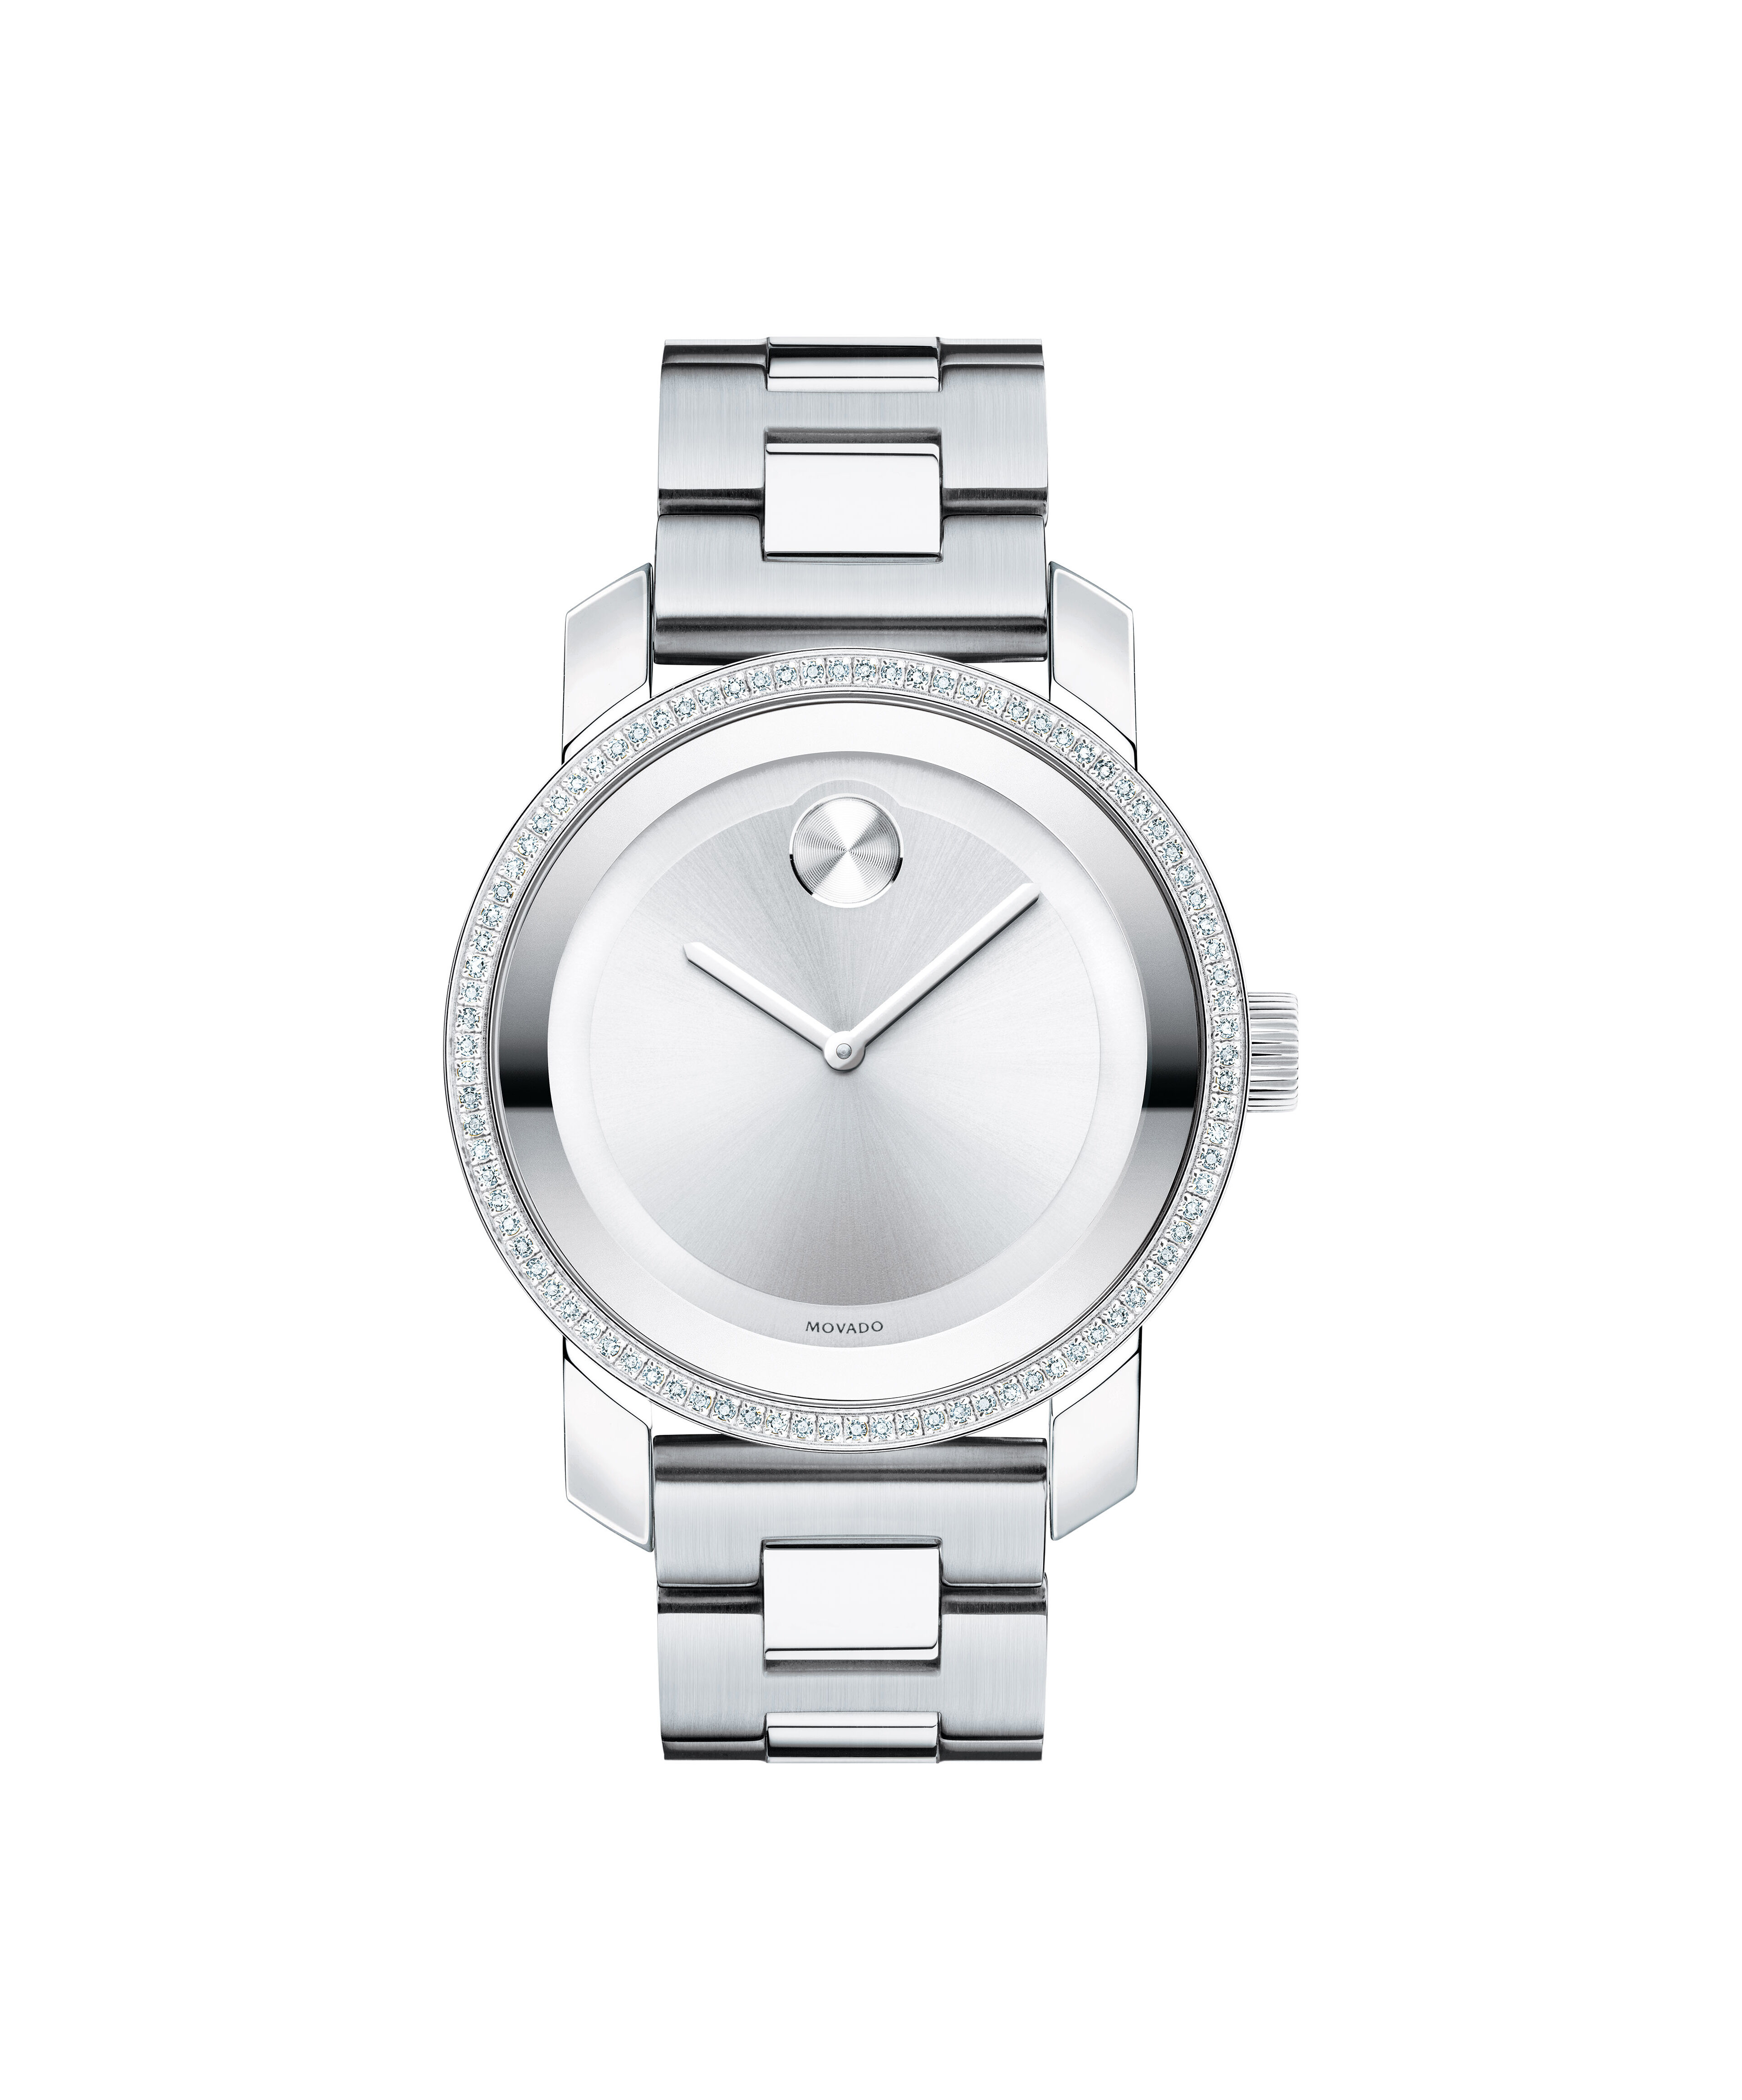 Replica Watch Rolex